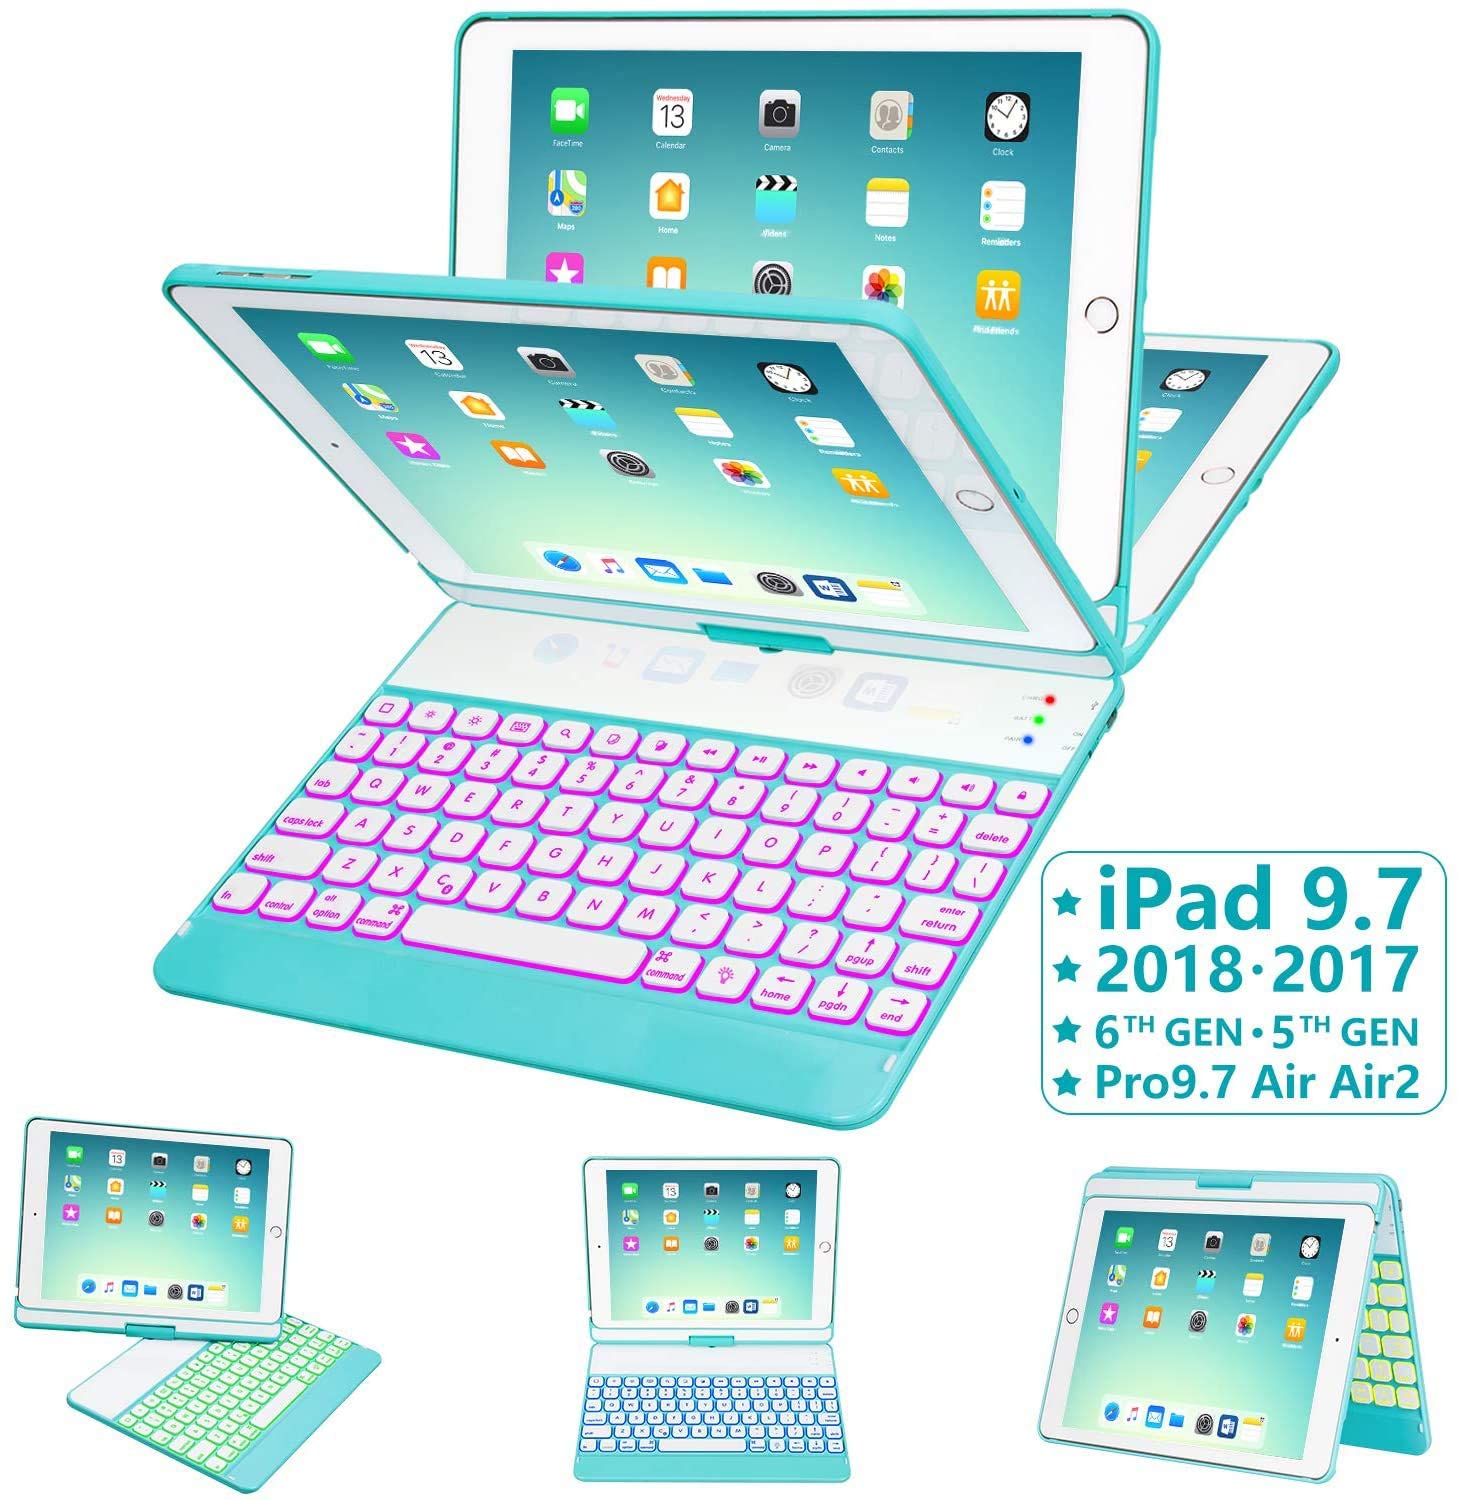 … 6th Gen iPad 2017 Bright Black iPad Pro 9.7 iPad Keyboard Case for 9.7 iPad 2018 iPad Air 2 Air 1,360 Rotatable Ultrathin Smart Keyboard Cover,Auto Wake Sleep,7 Color Backlit 5th Gen 